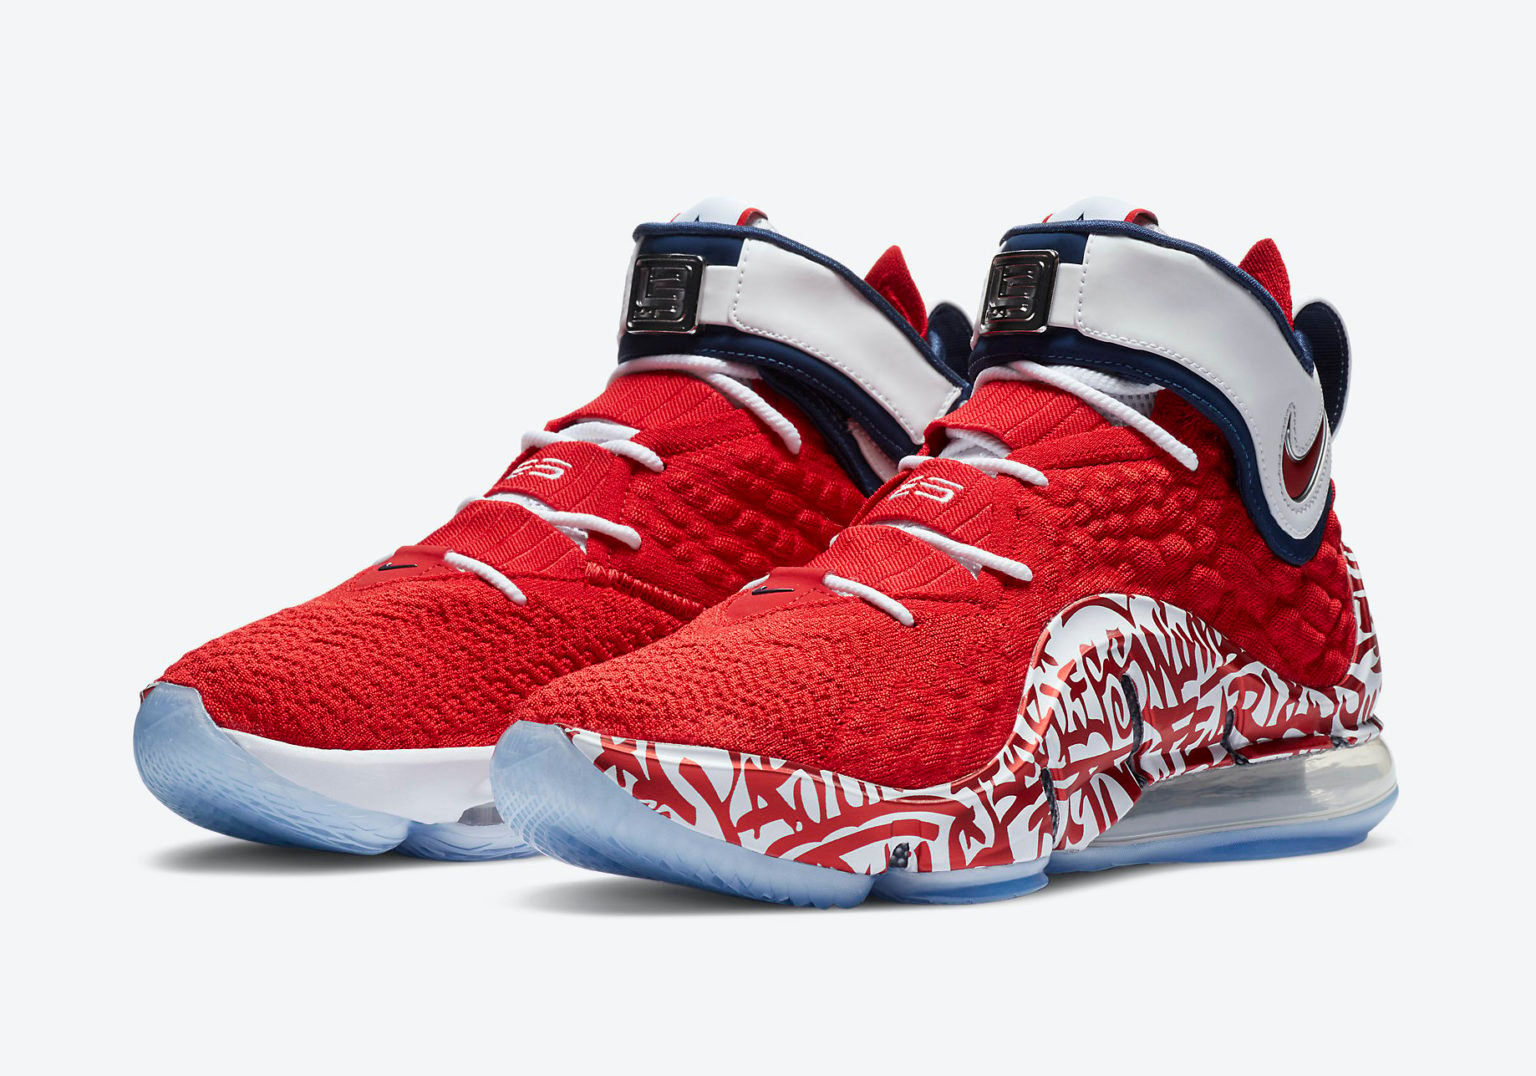 Nike LeBron 17 ‘Graffiti Fire Red’ Release Date